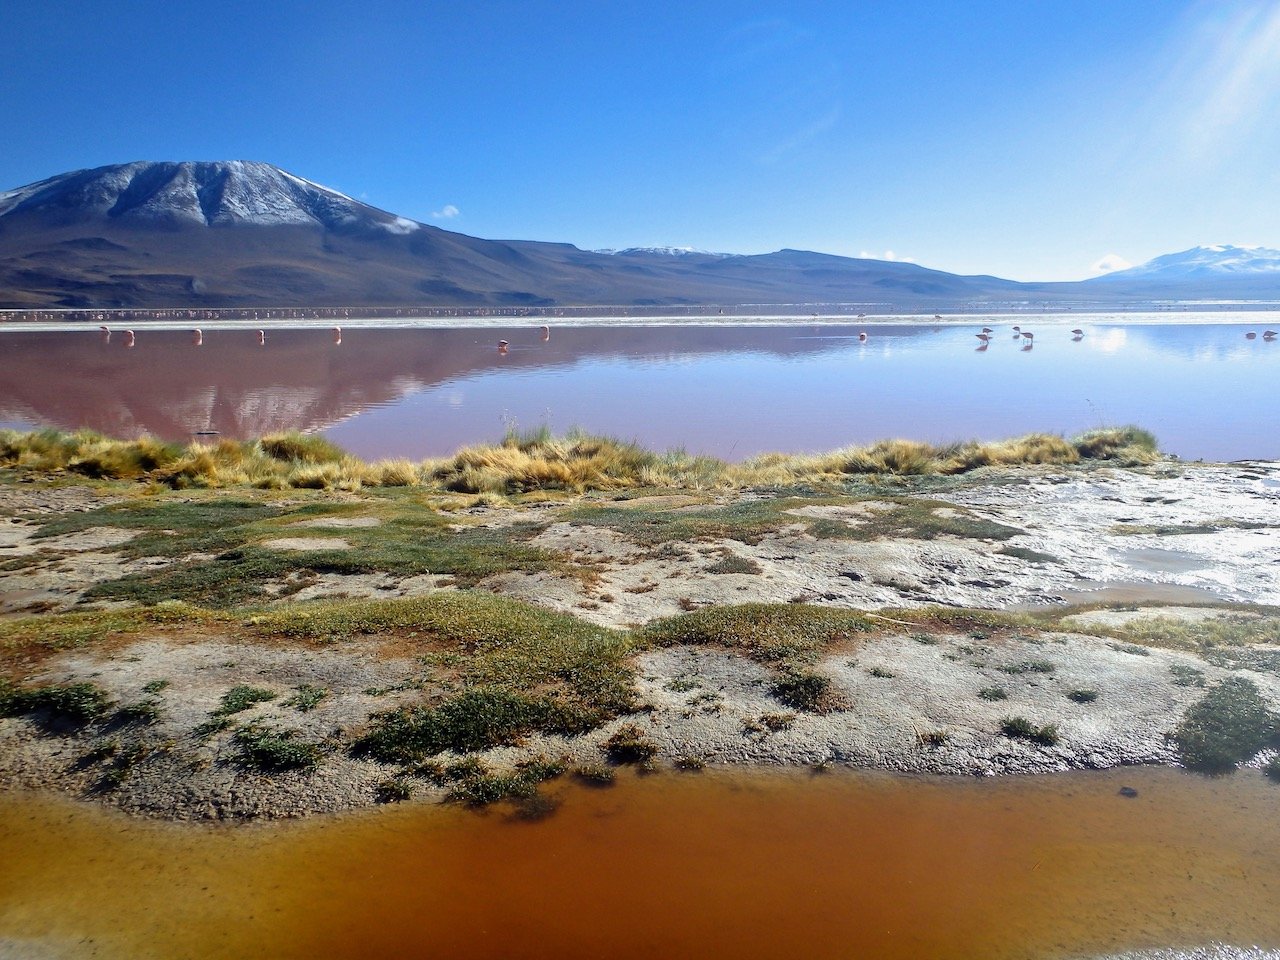   Laguna Colorada, Bolivia (ISO 125, 5 mm,  f /11, 1/160 s)  